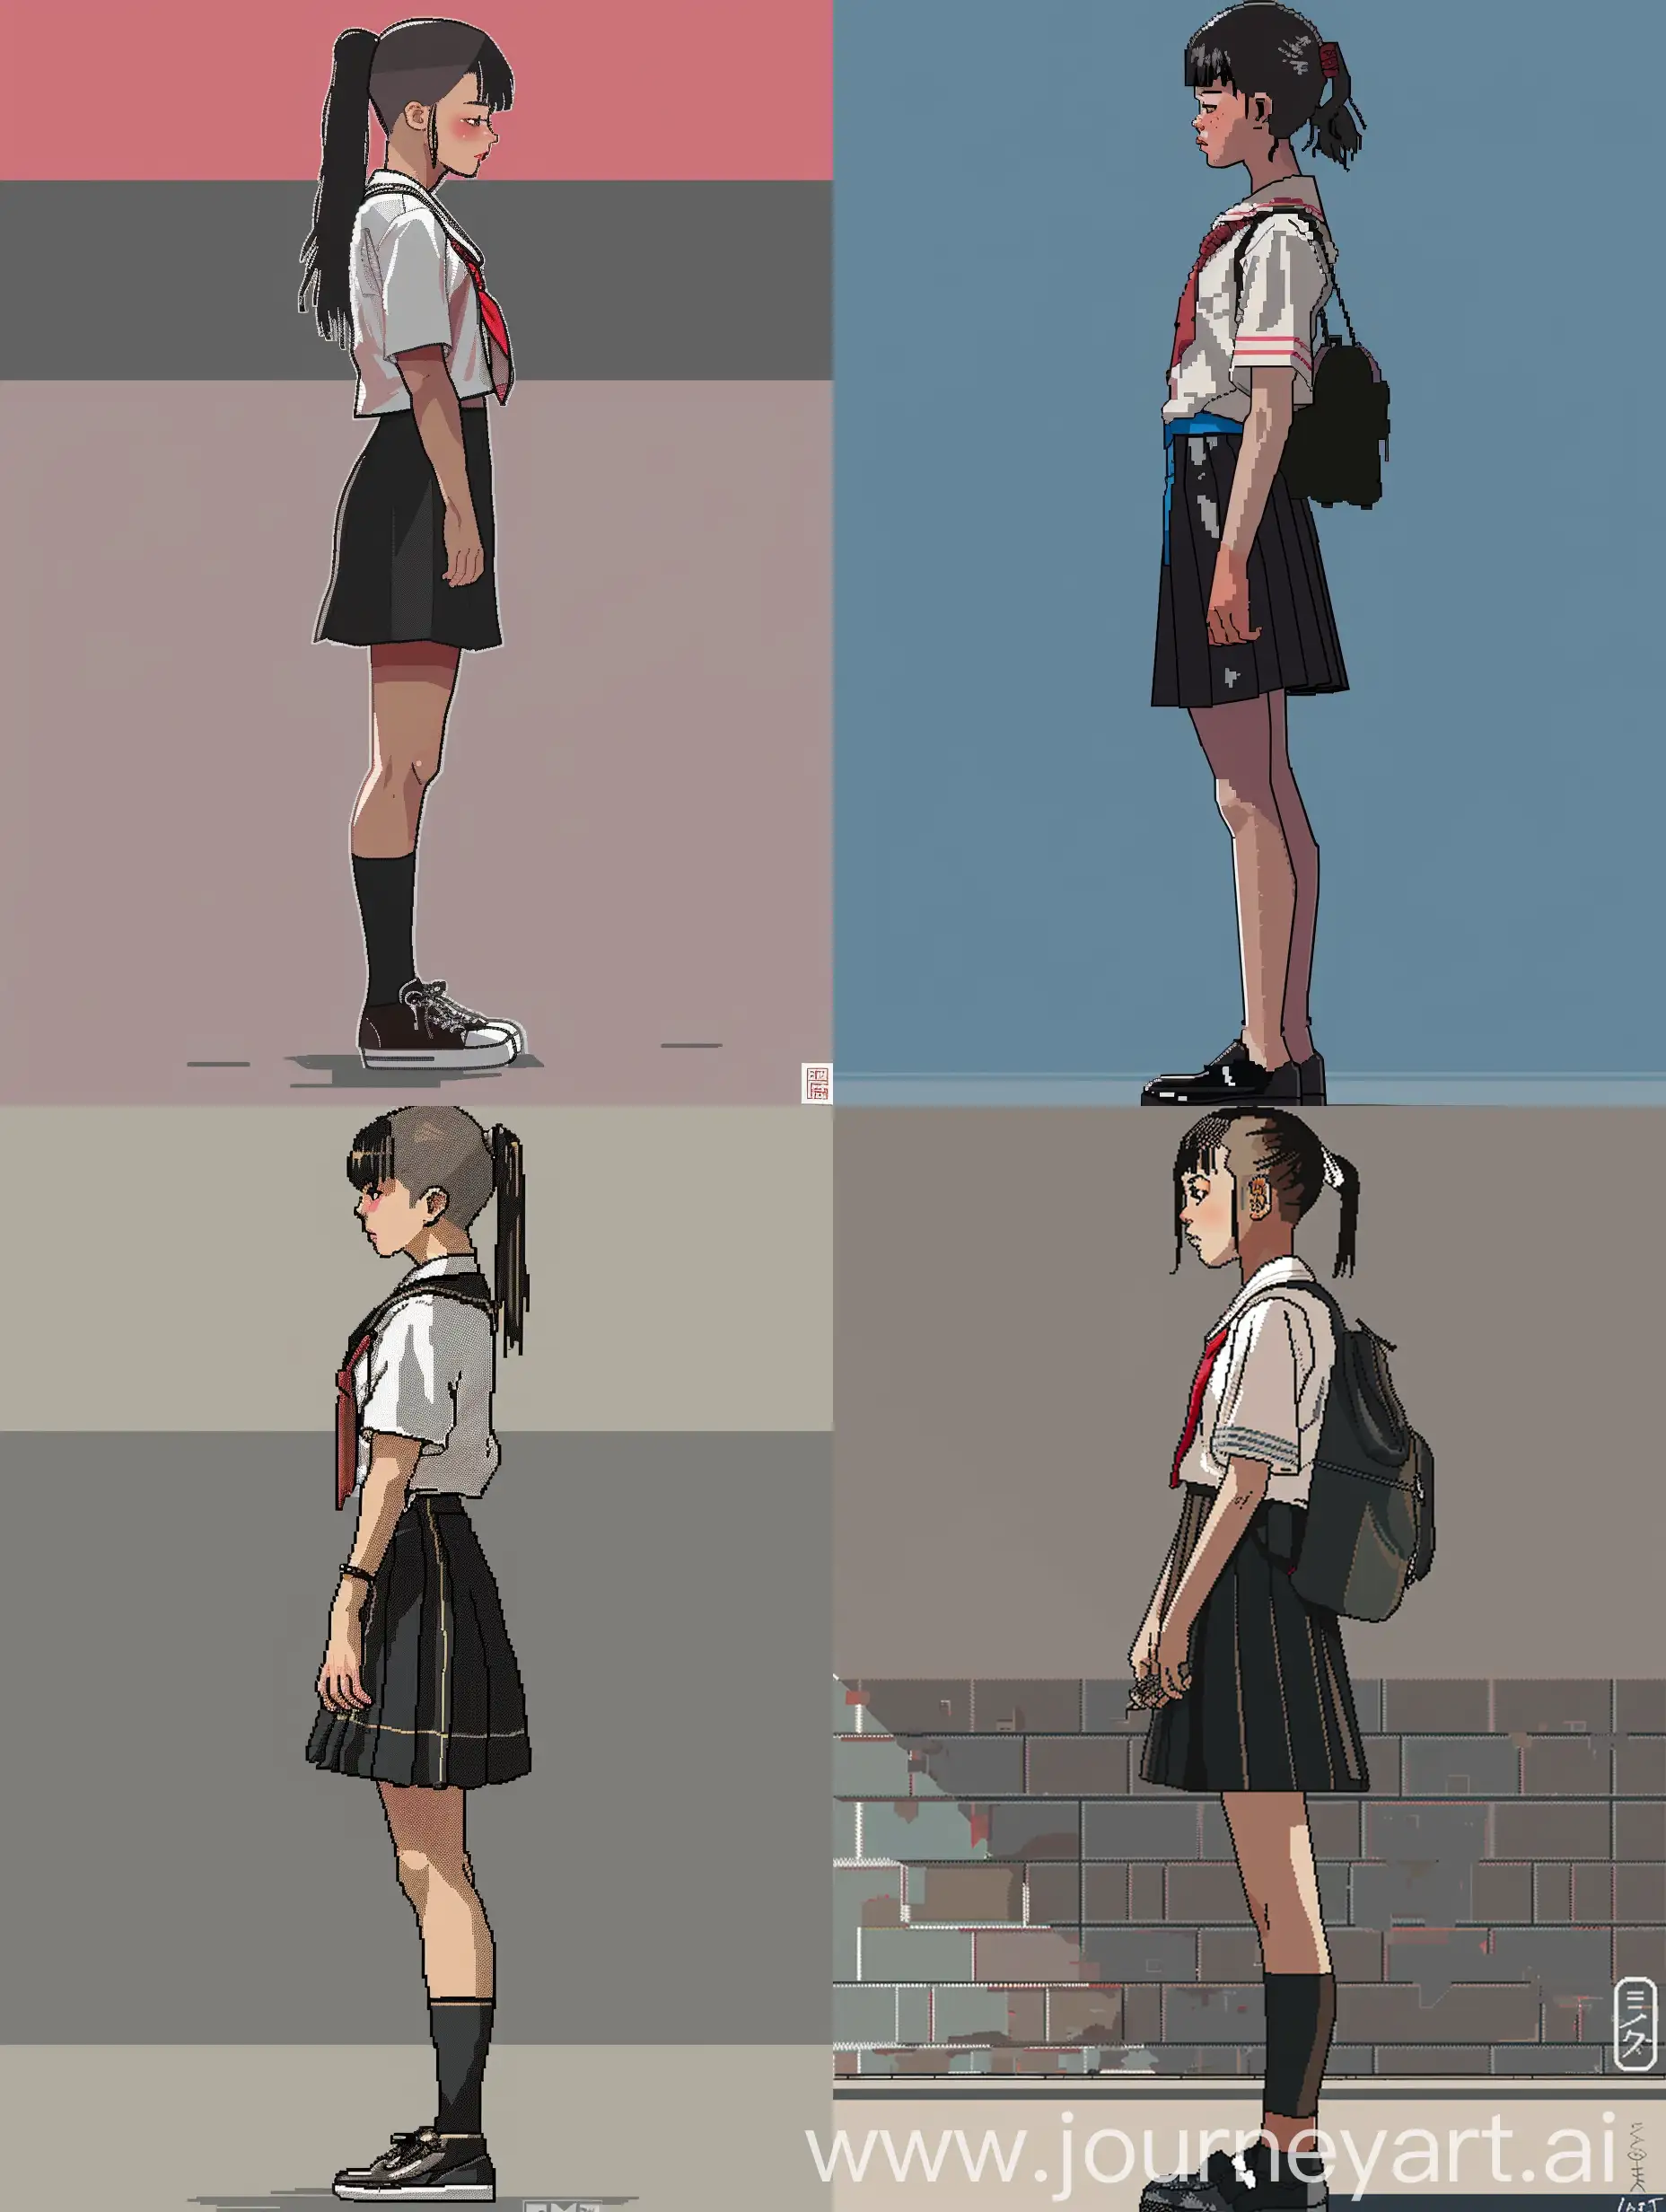 Japanese schoolgirl, pixel art, side view, full length, concept art